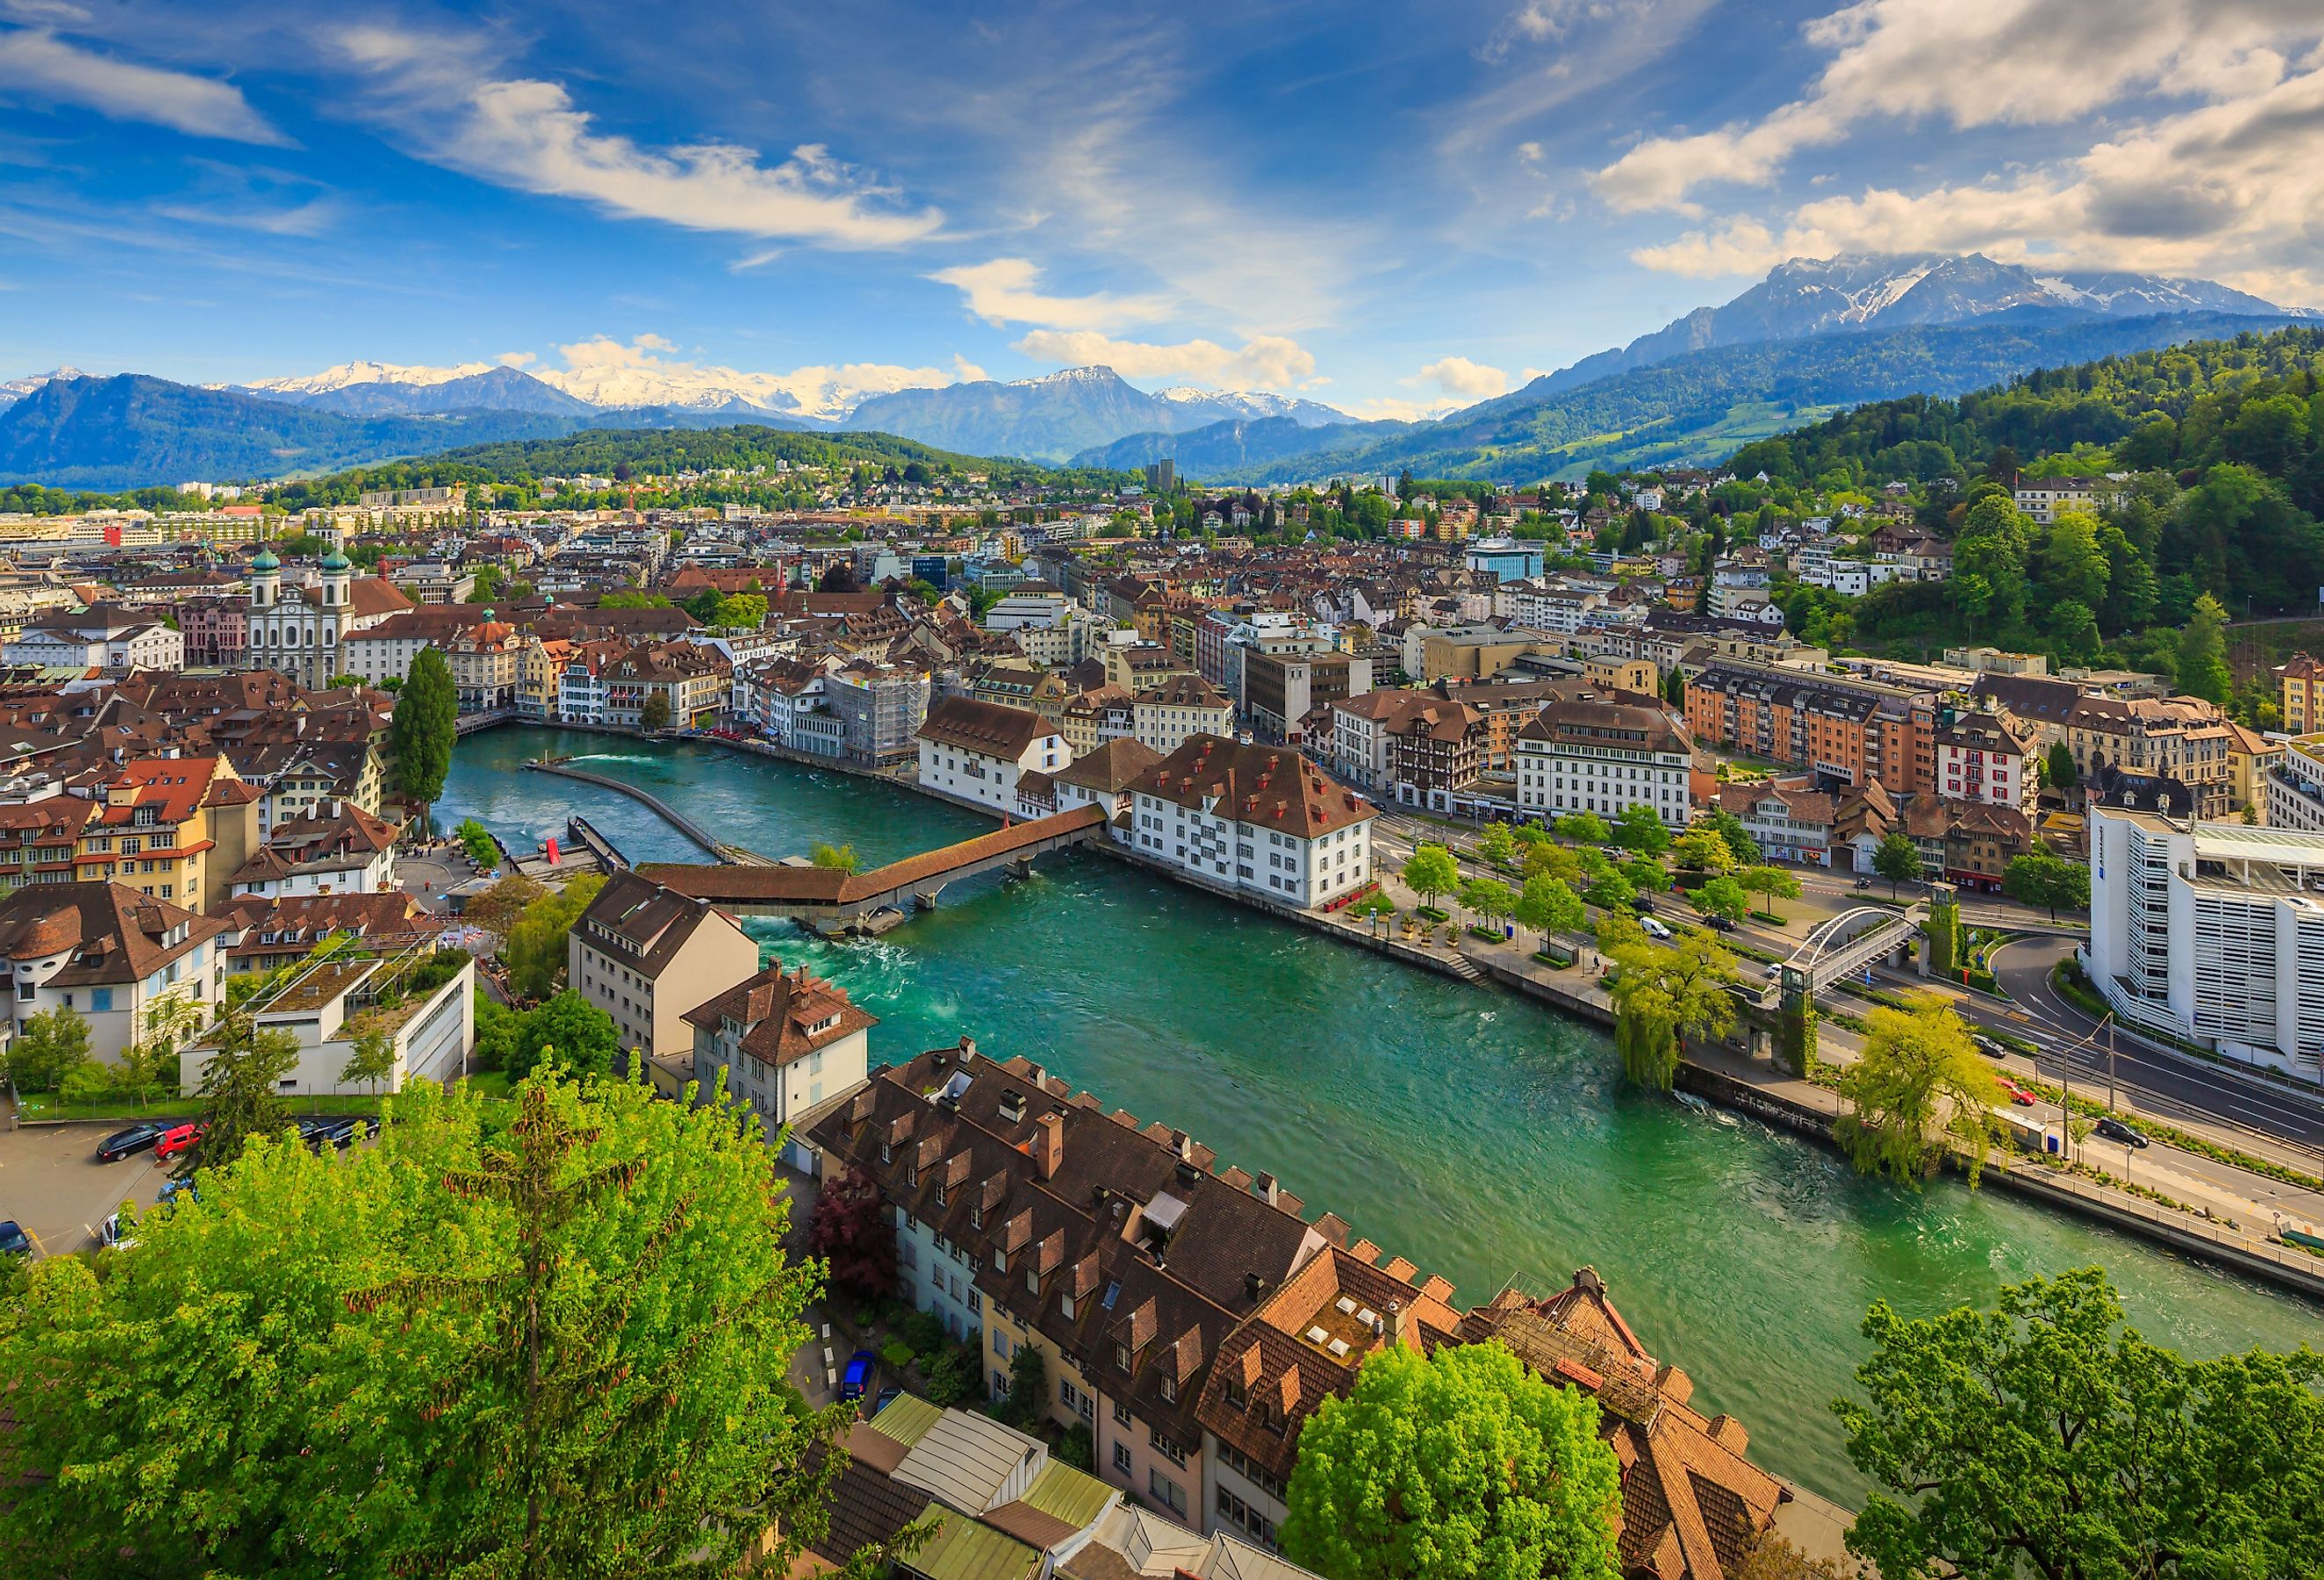 Lucerne, Switzerland.